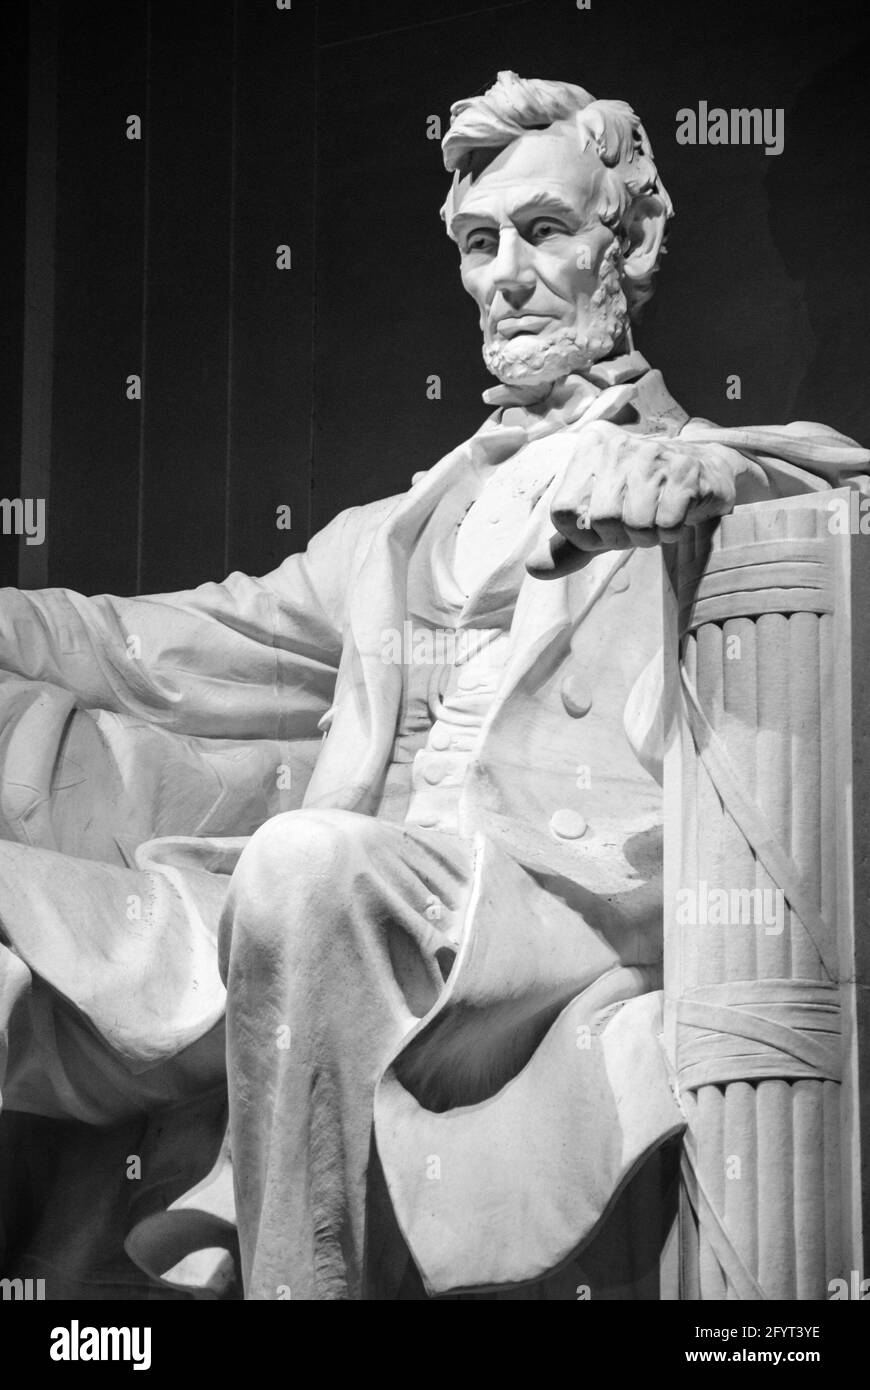 Lincoln Memorial statue d'Abraham Lincoln à Washington, D.C. (Etats-Unis) Banque D'Images